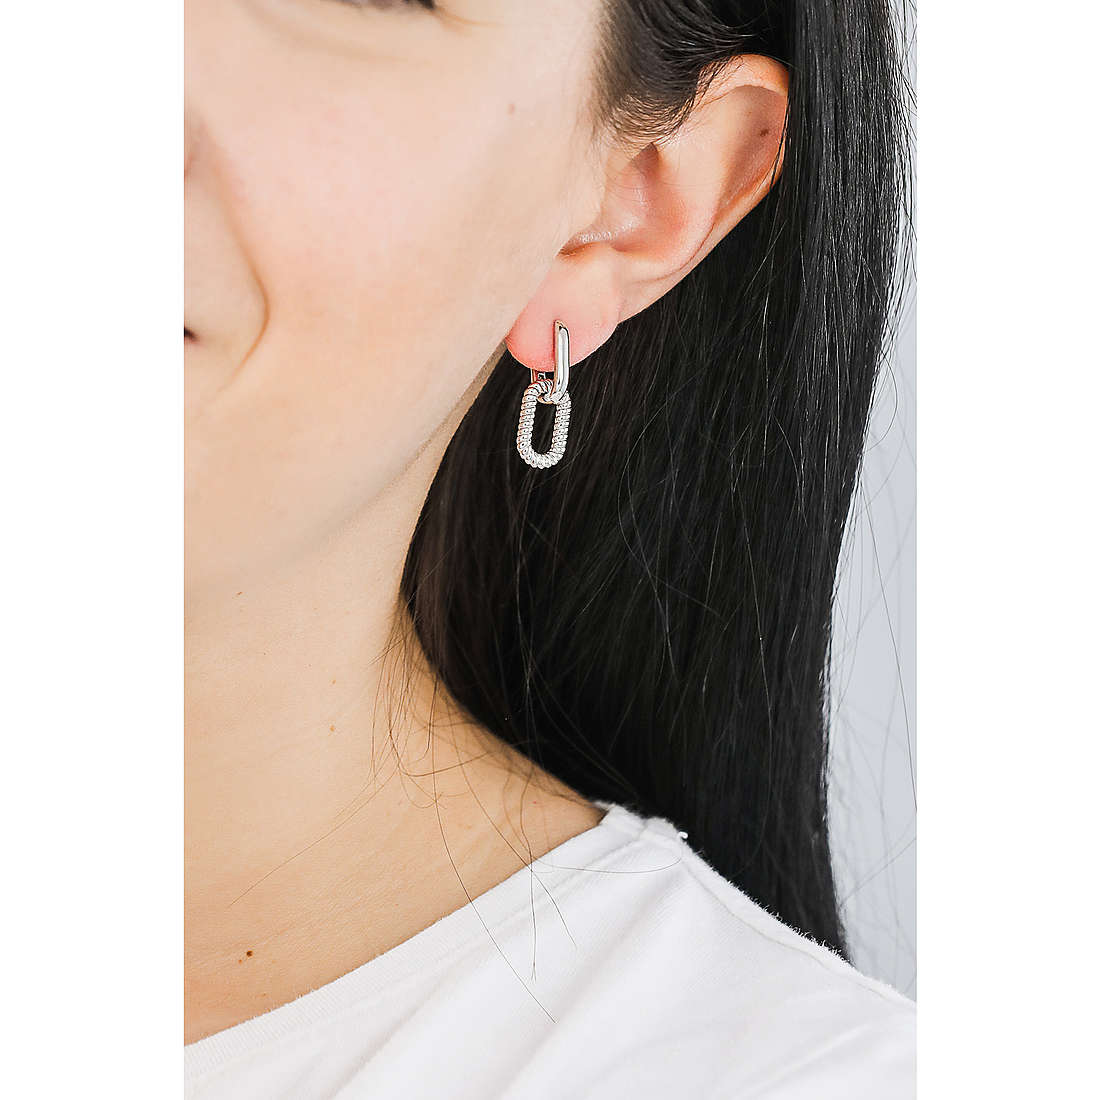 TI SENTO MILANO earrings woman 7831ST wearing